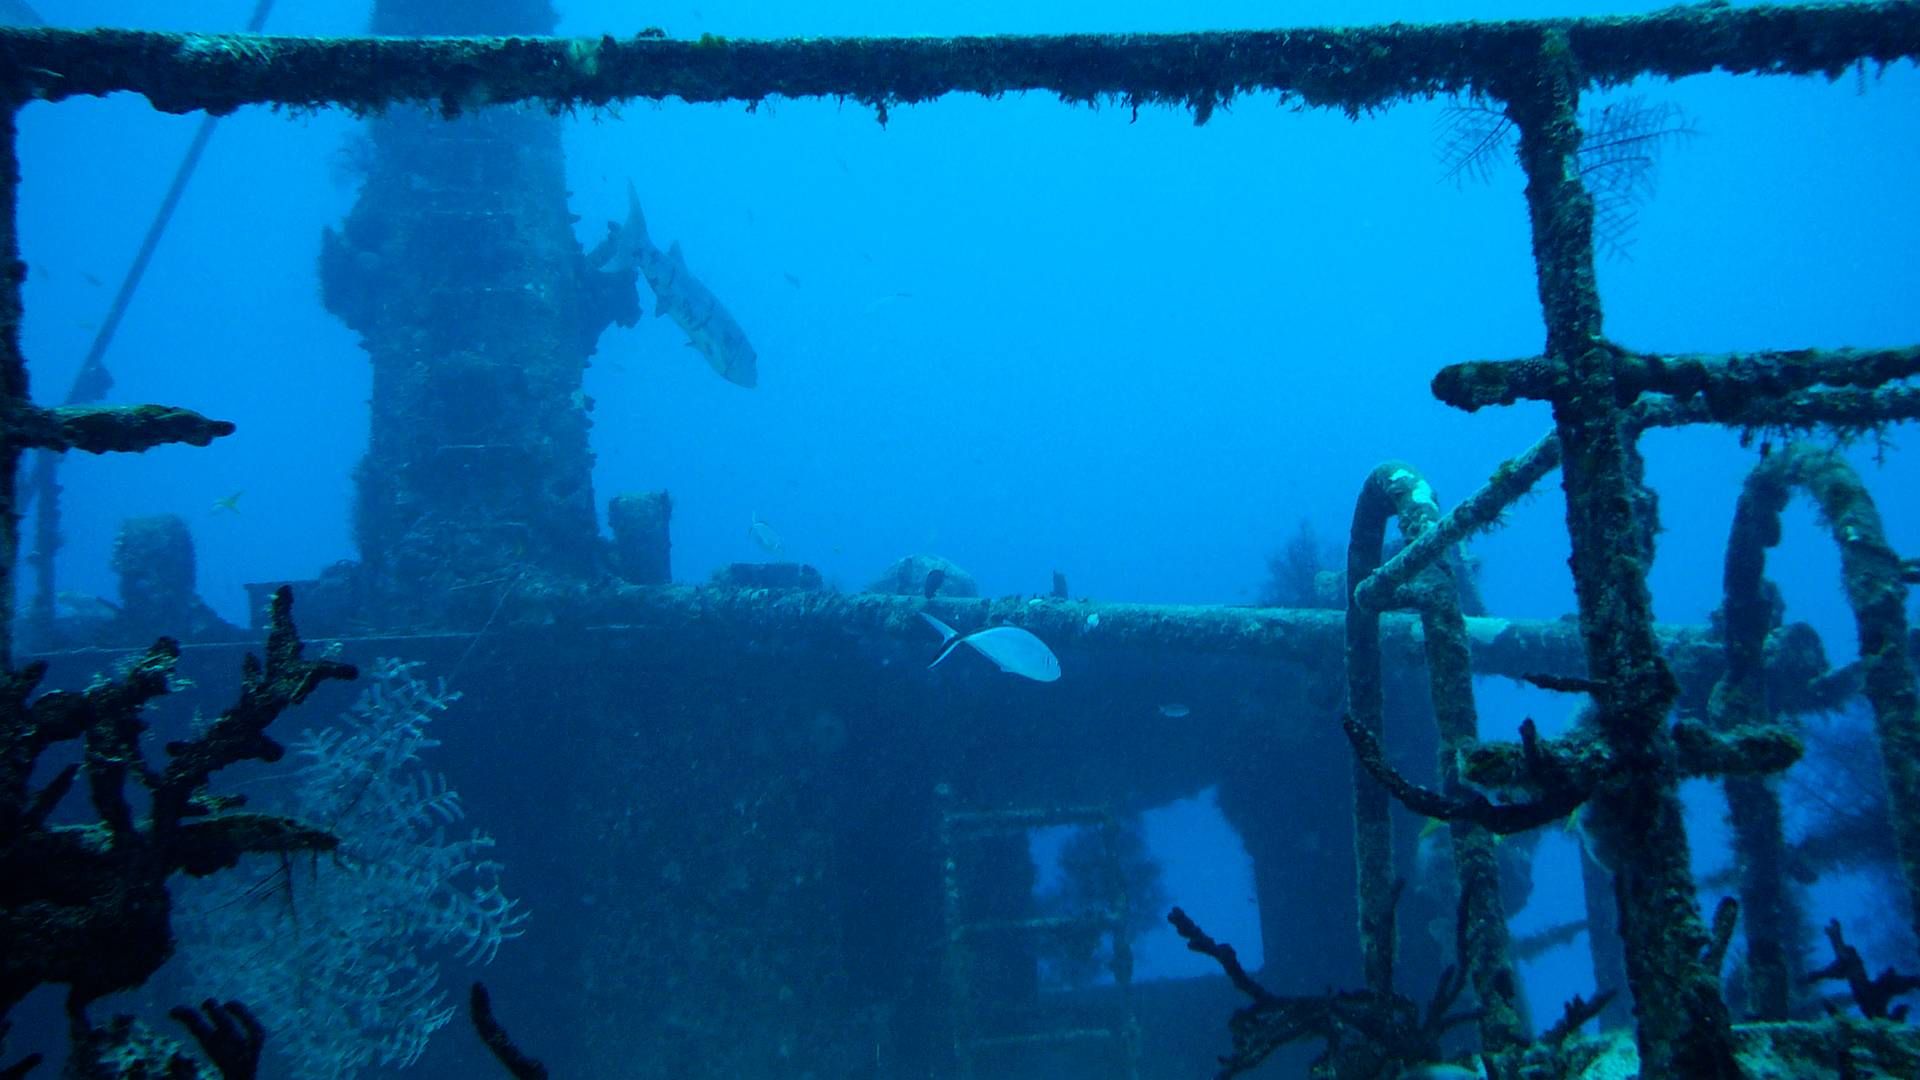 Dykning ved Mexicos kyster byder bl.a. på sunkne skibe. I fremtiden kan undervandsrobotter stå for undervandsinspektion af skibe og skabe digitale 3D-modeller af skibsskrog. | Foto: Johnny Frederiksen